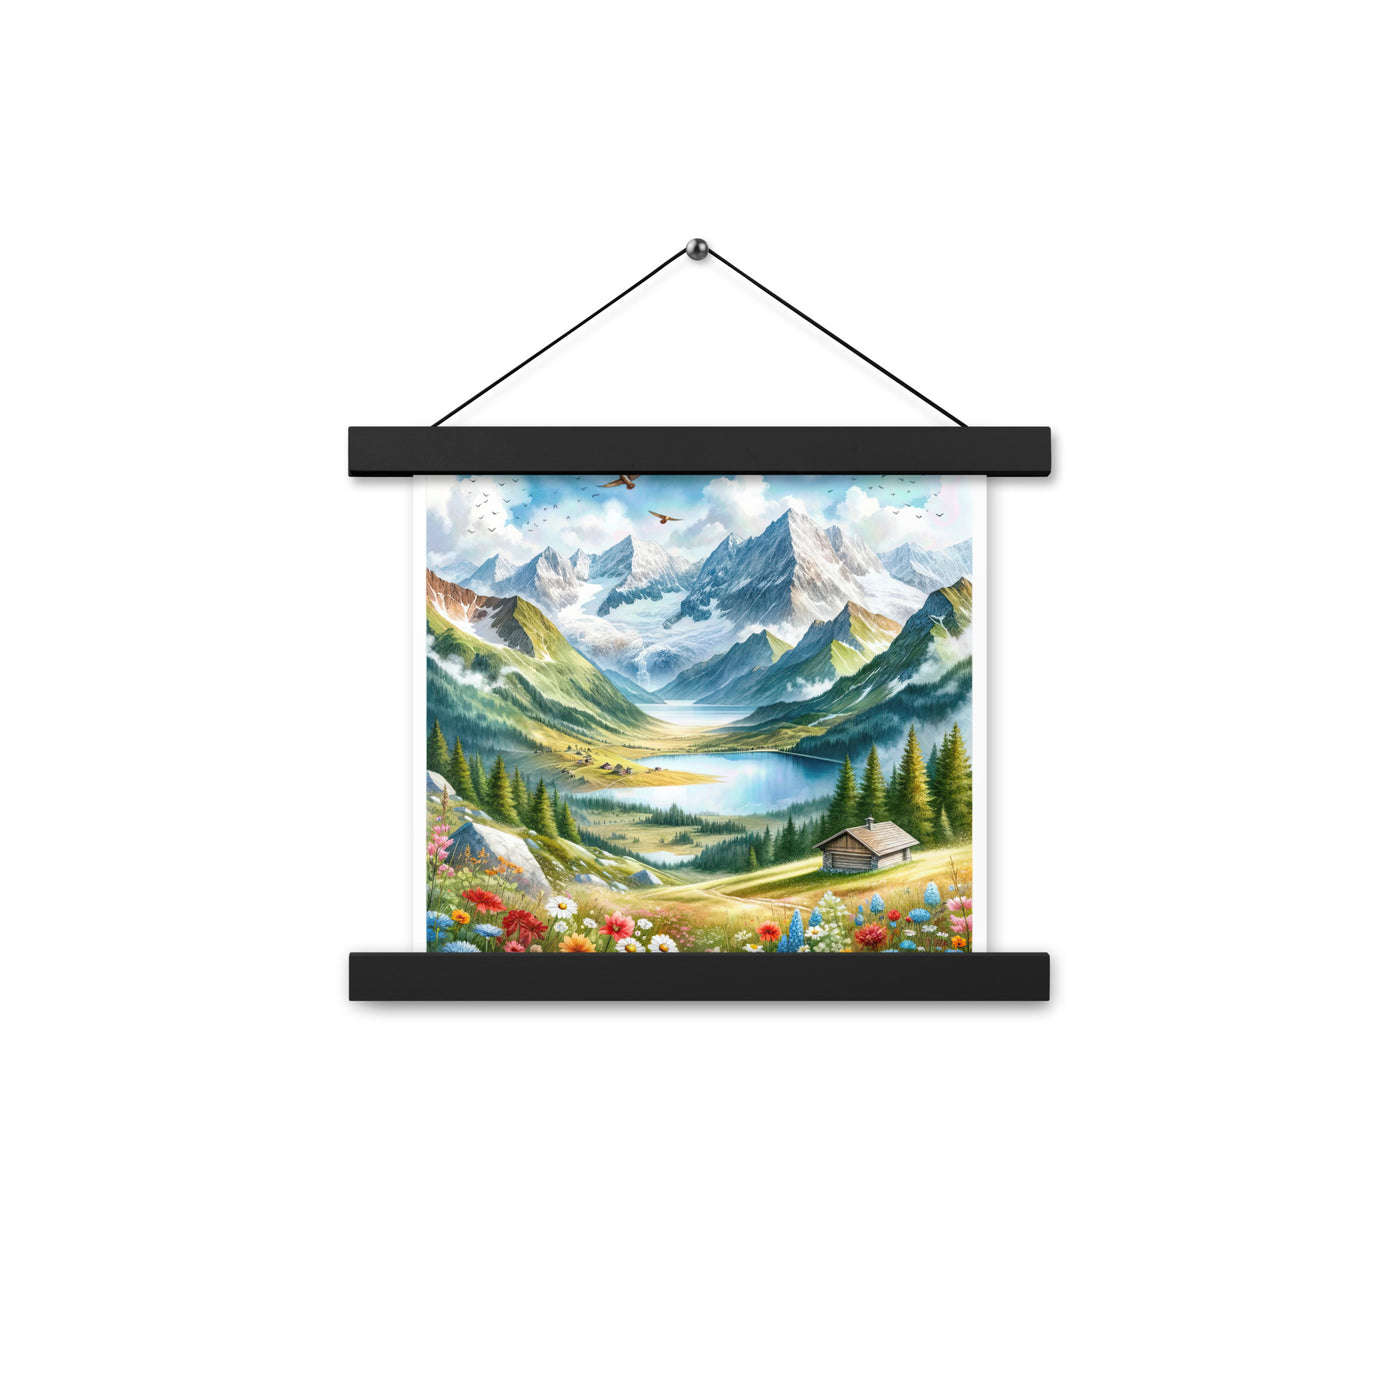 Quadratisches Aquarell der Alpen, Berge mit schneebedeckten Spitzen - Premium Poster mit Aufhängung berge xxx yyy zzz 25.4 x 25.4 cm